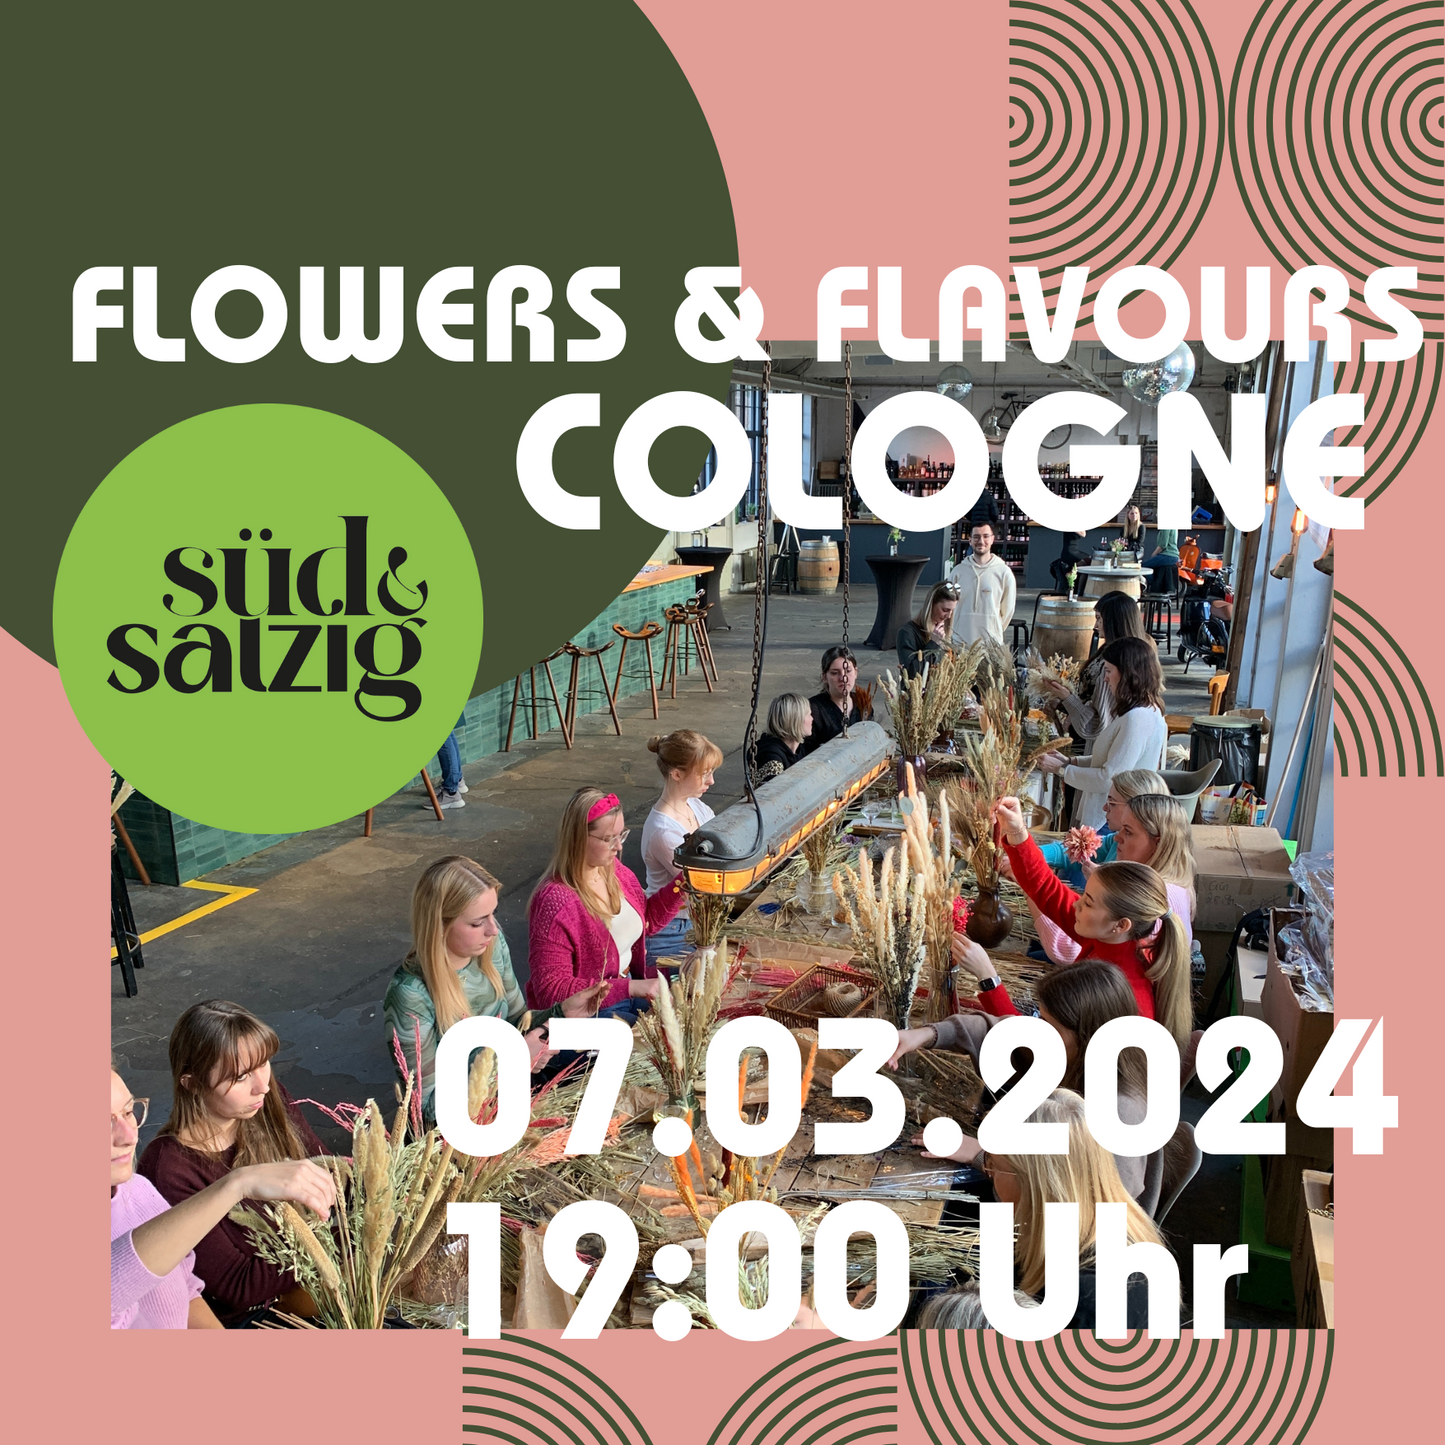 FLOWERS & FLAVOURS - Trockenblumenbouquet Workshop und Drinks Café Süd & Salzig Köln 07.03.2024 19 Uhr